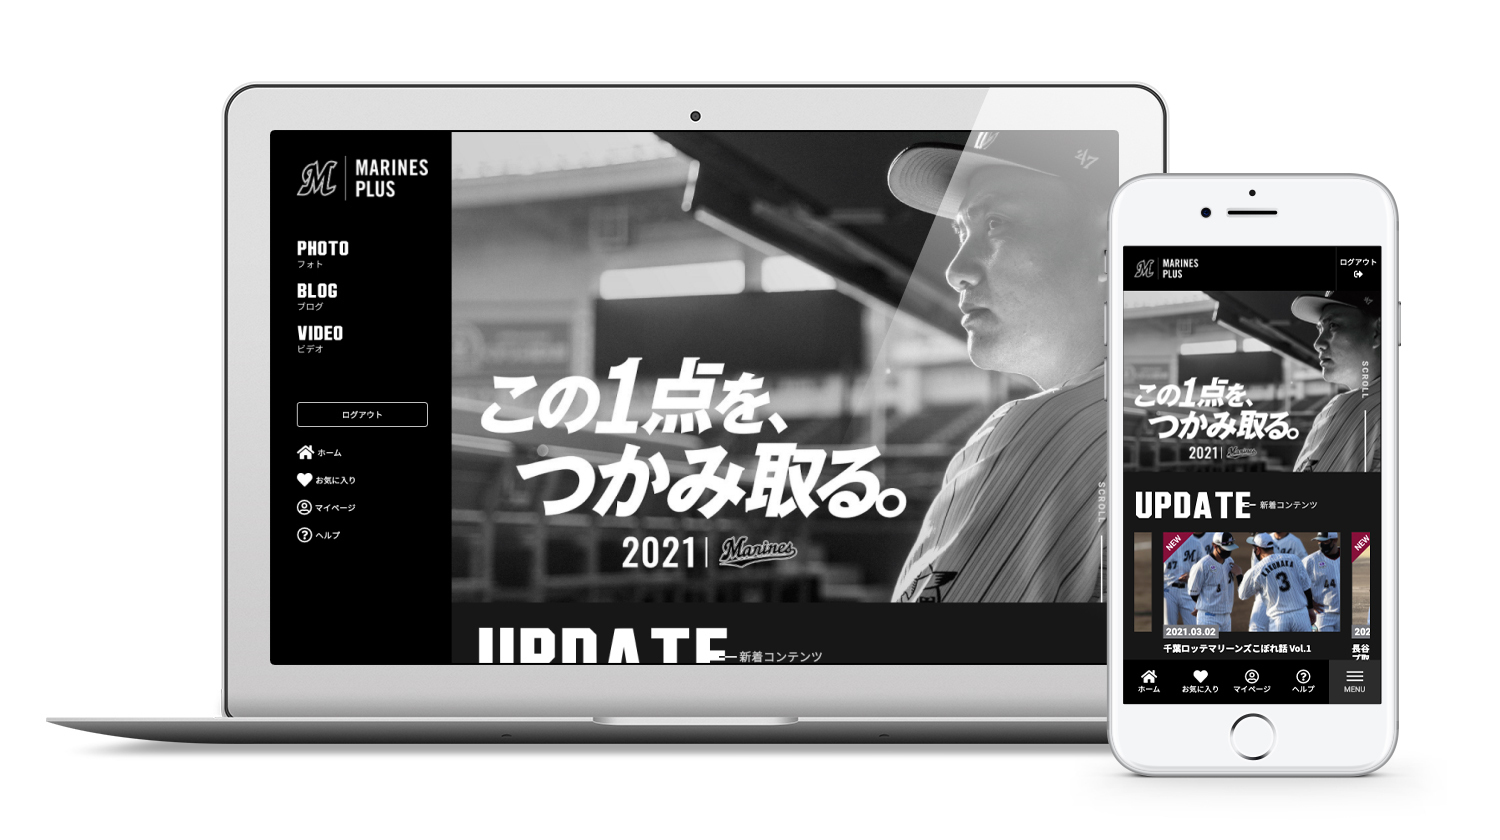 千葉ロッテマリーンズの公式ファンメディアをオープン 株式会社skiyaki ファンサイト ファンクラブ ストアサイト運営